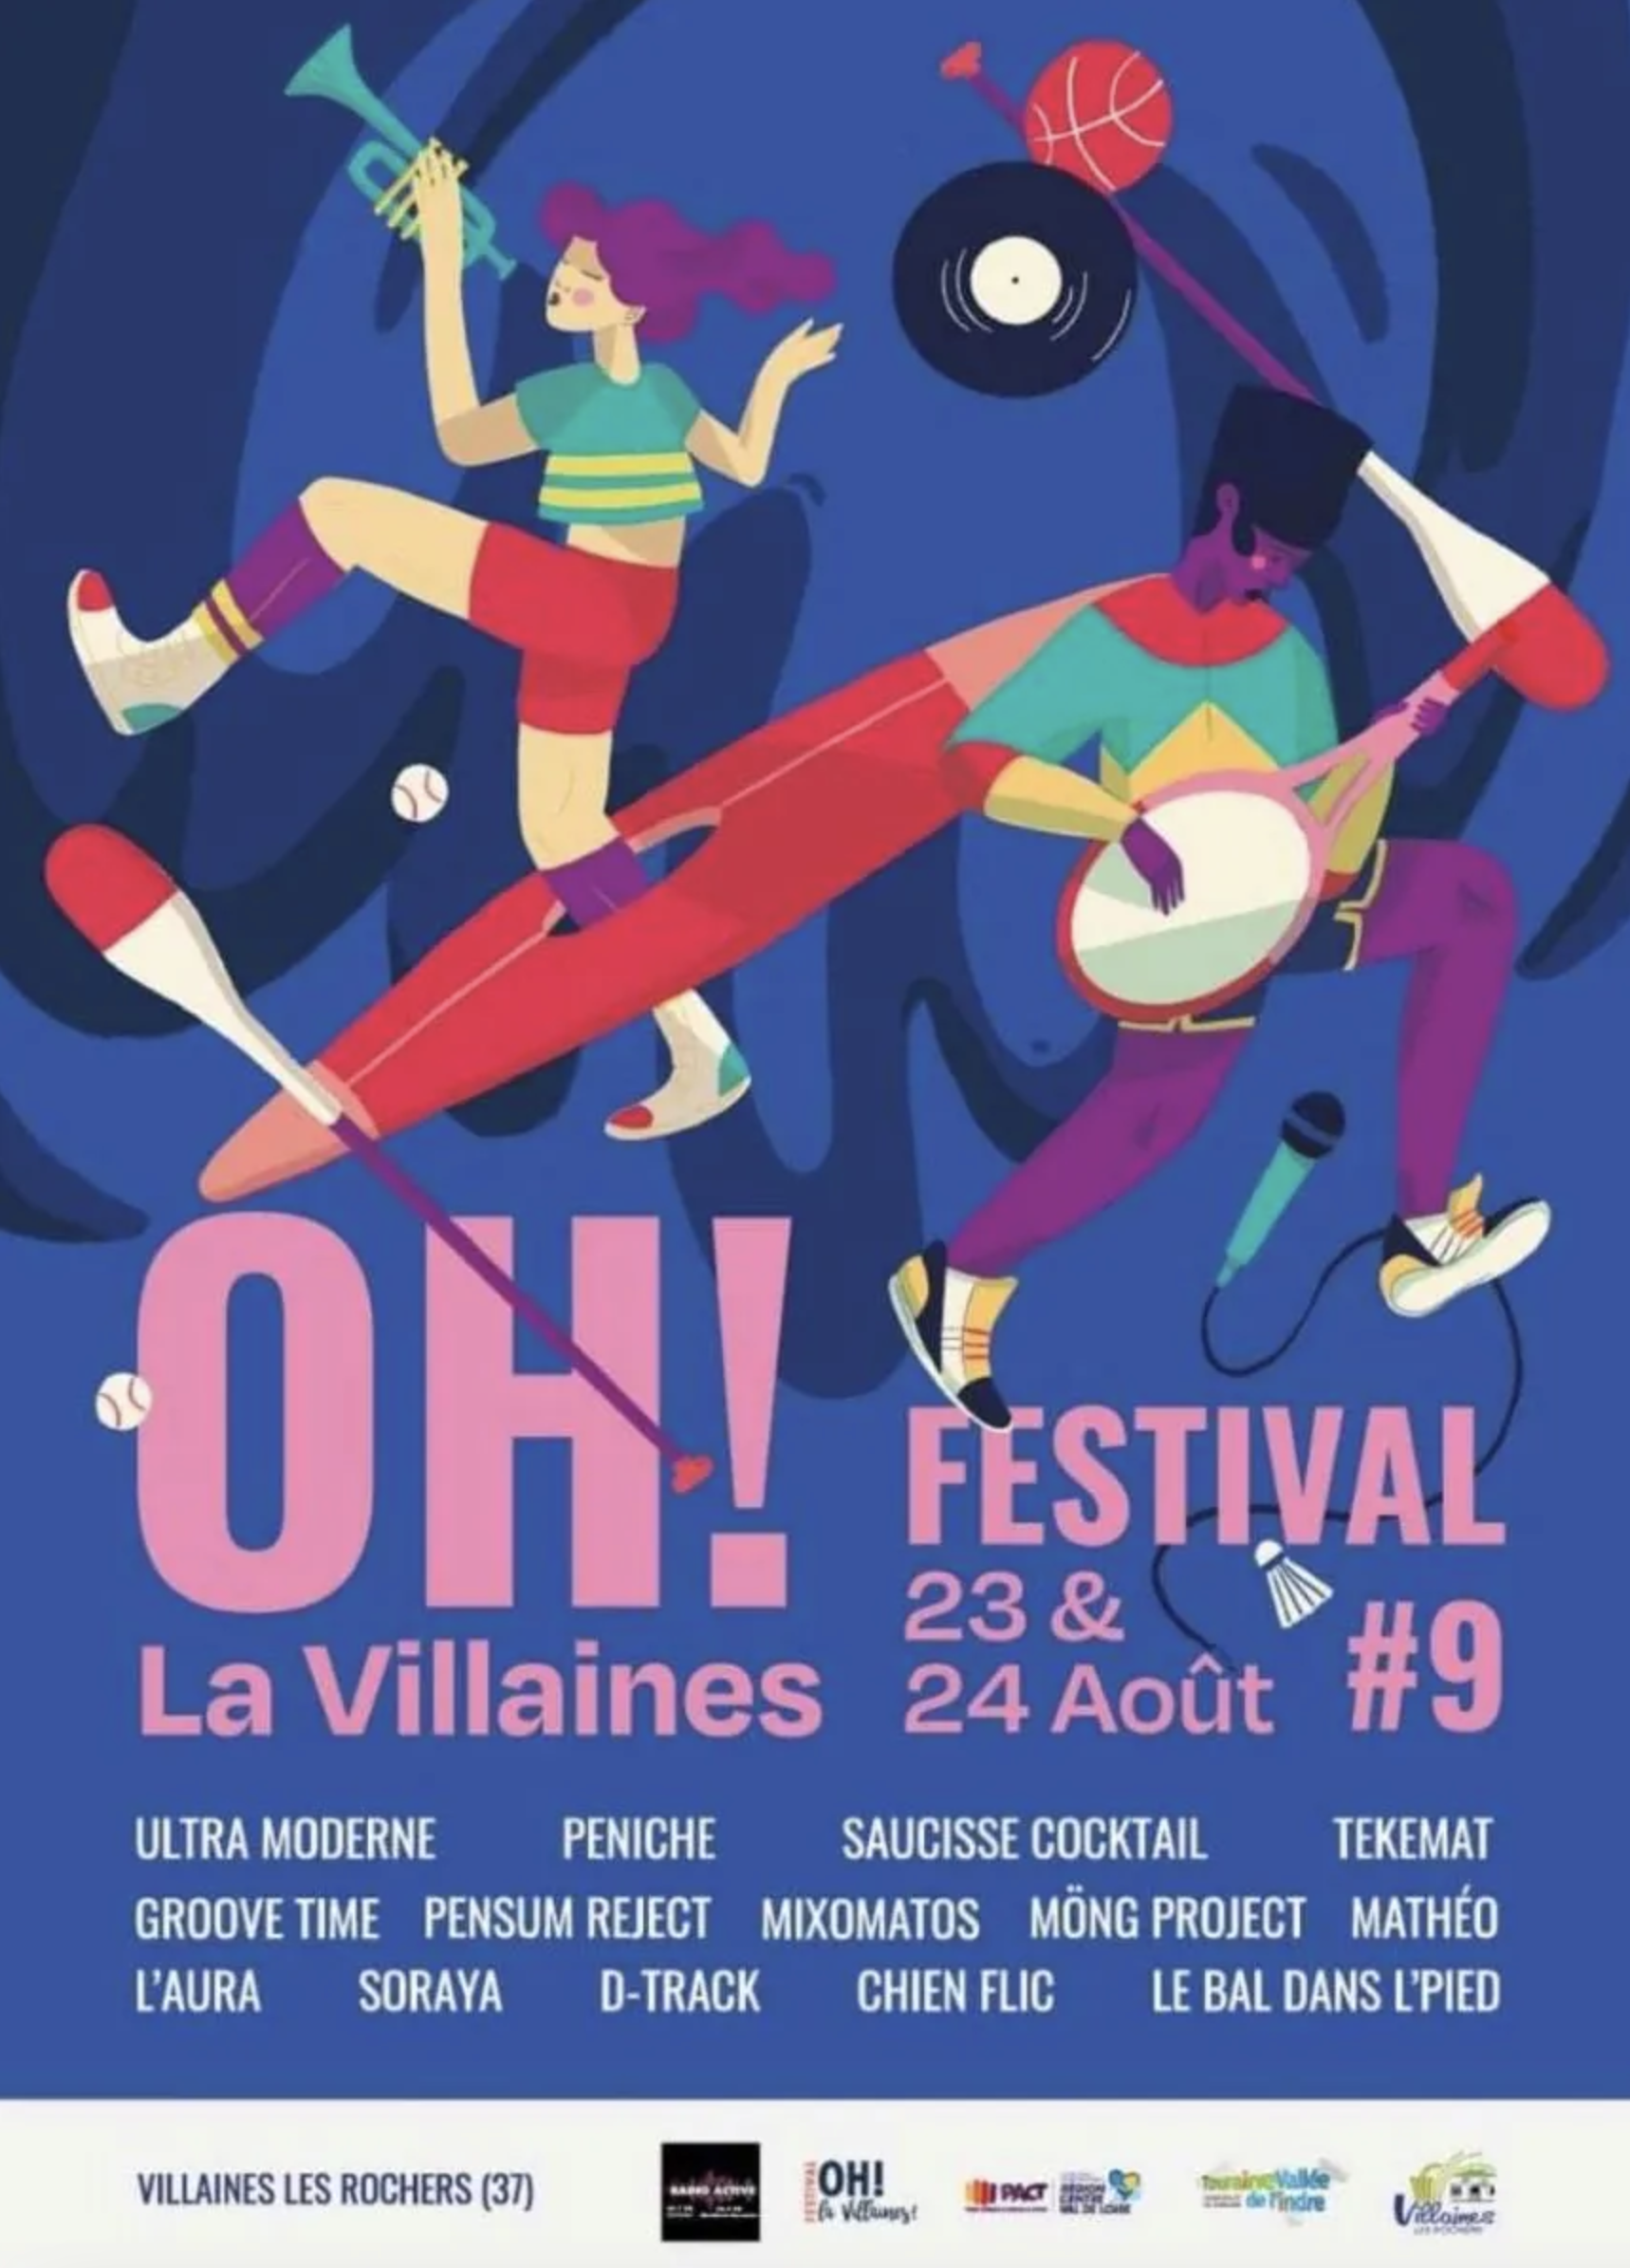 Festival Oh! La Villaines! #9